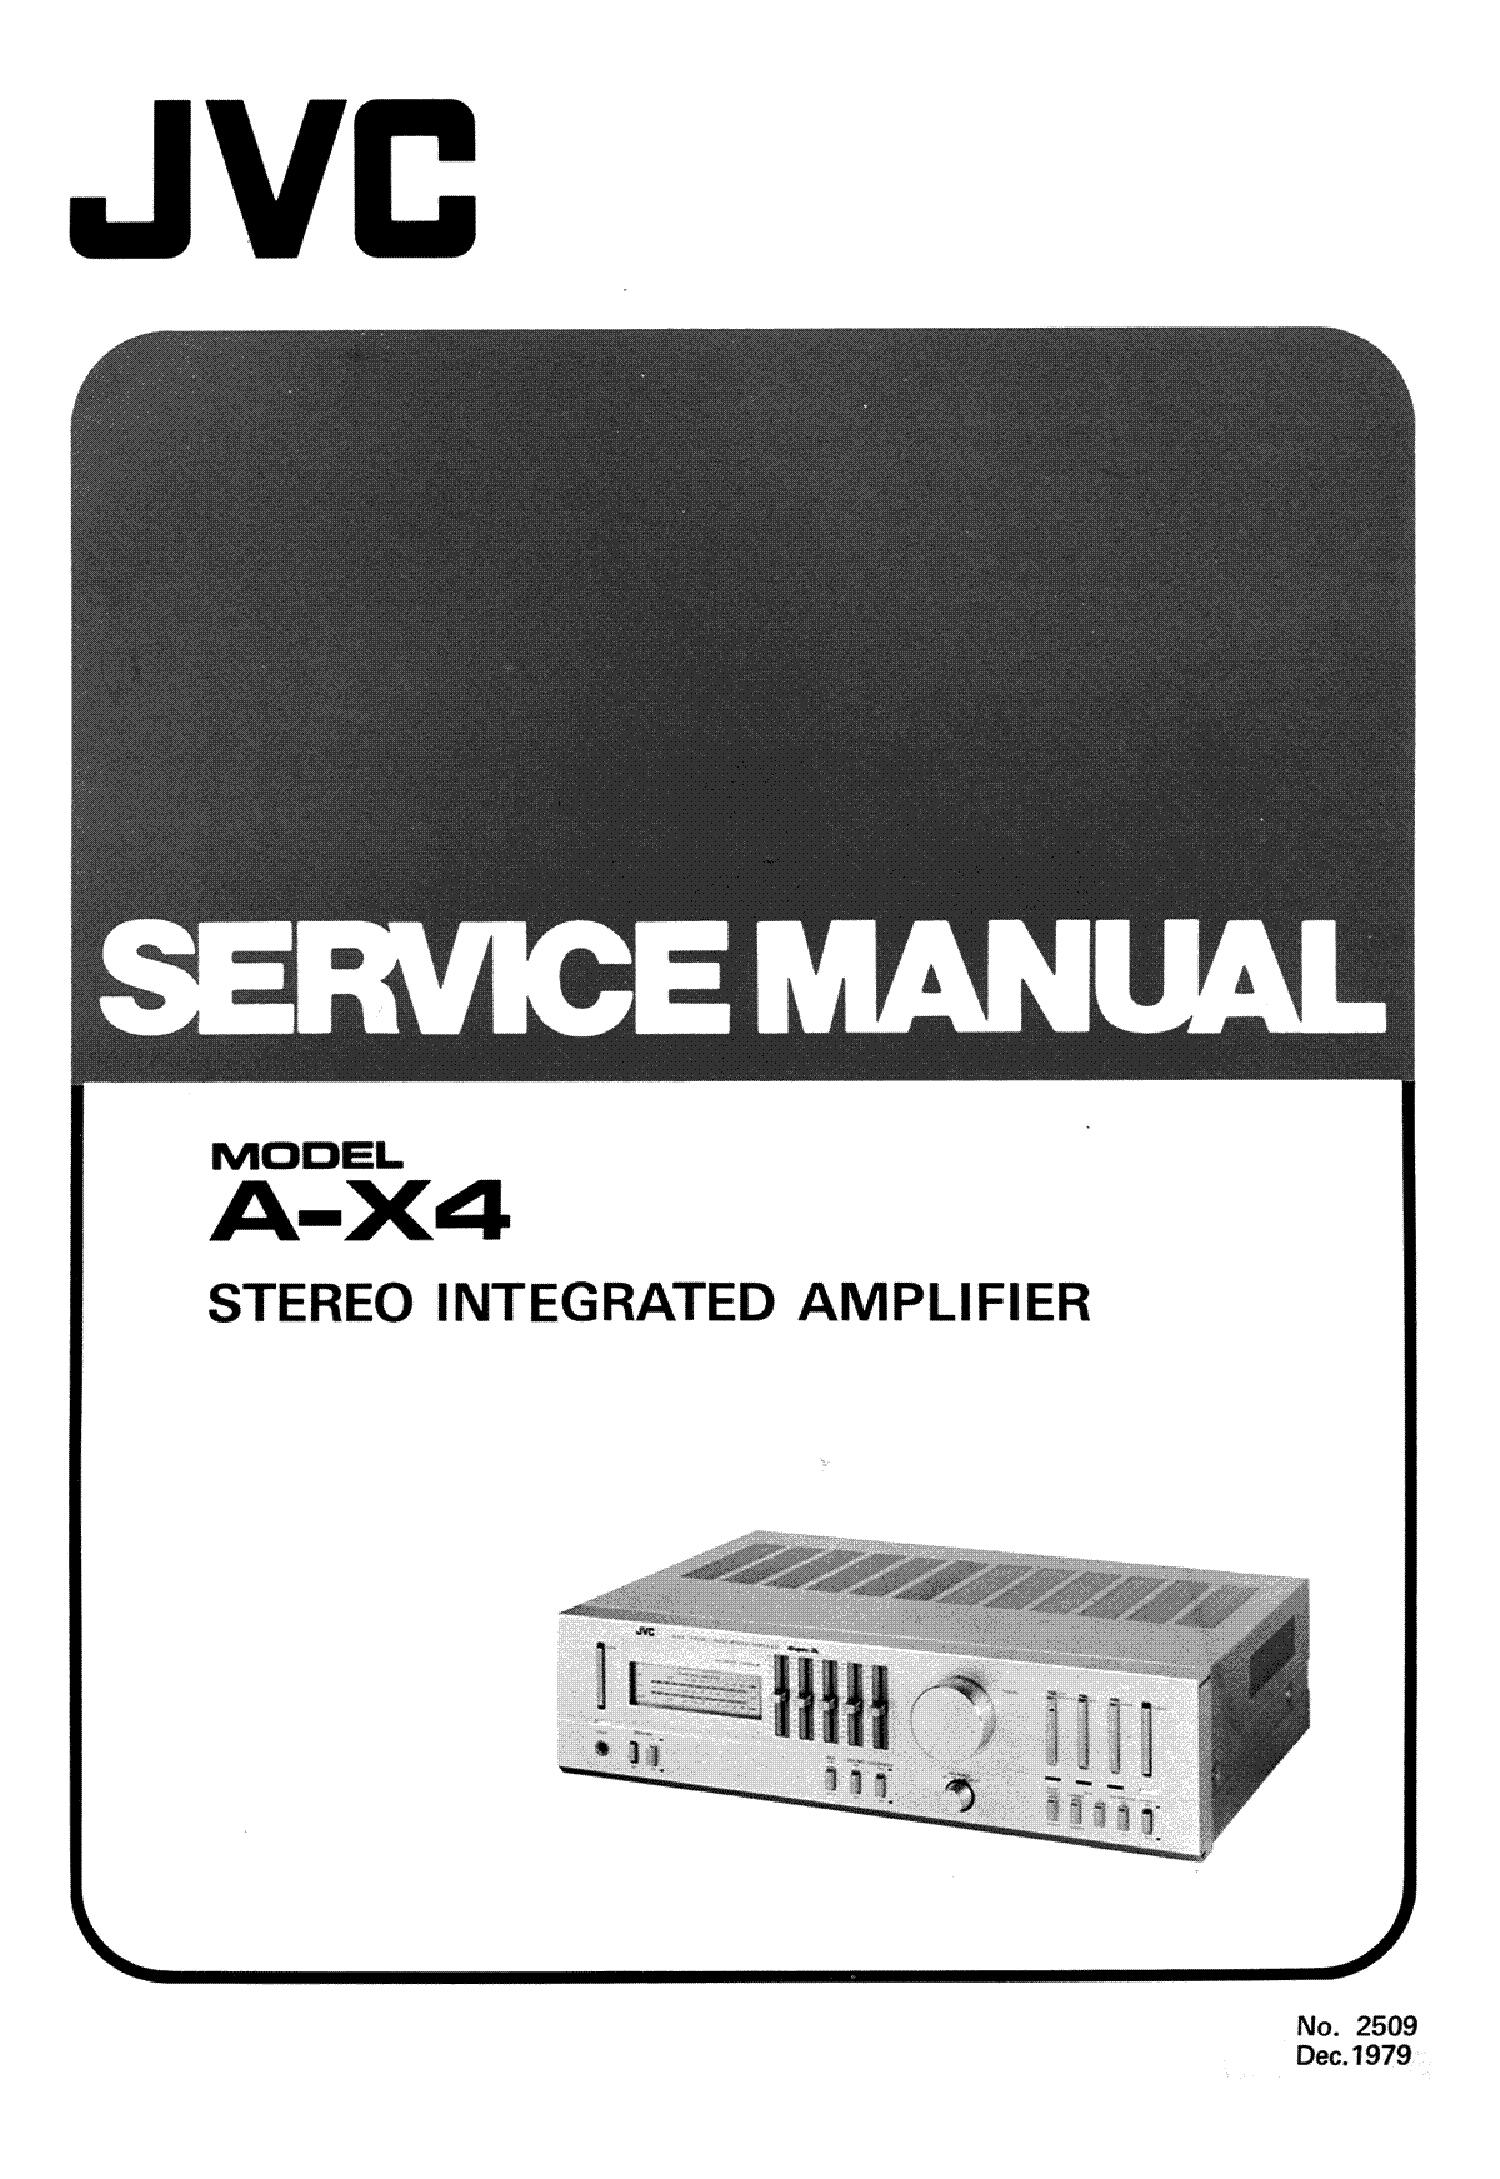 JVC A-X4 SM 1 service manual (1st page)